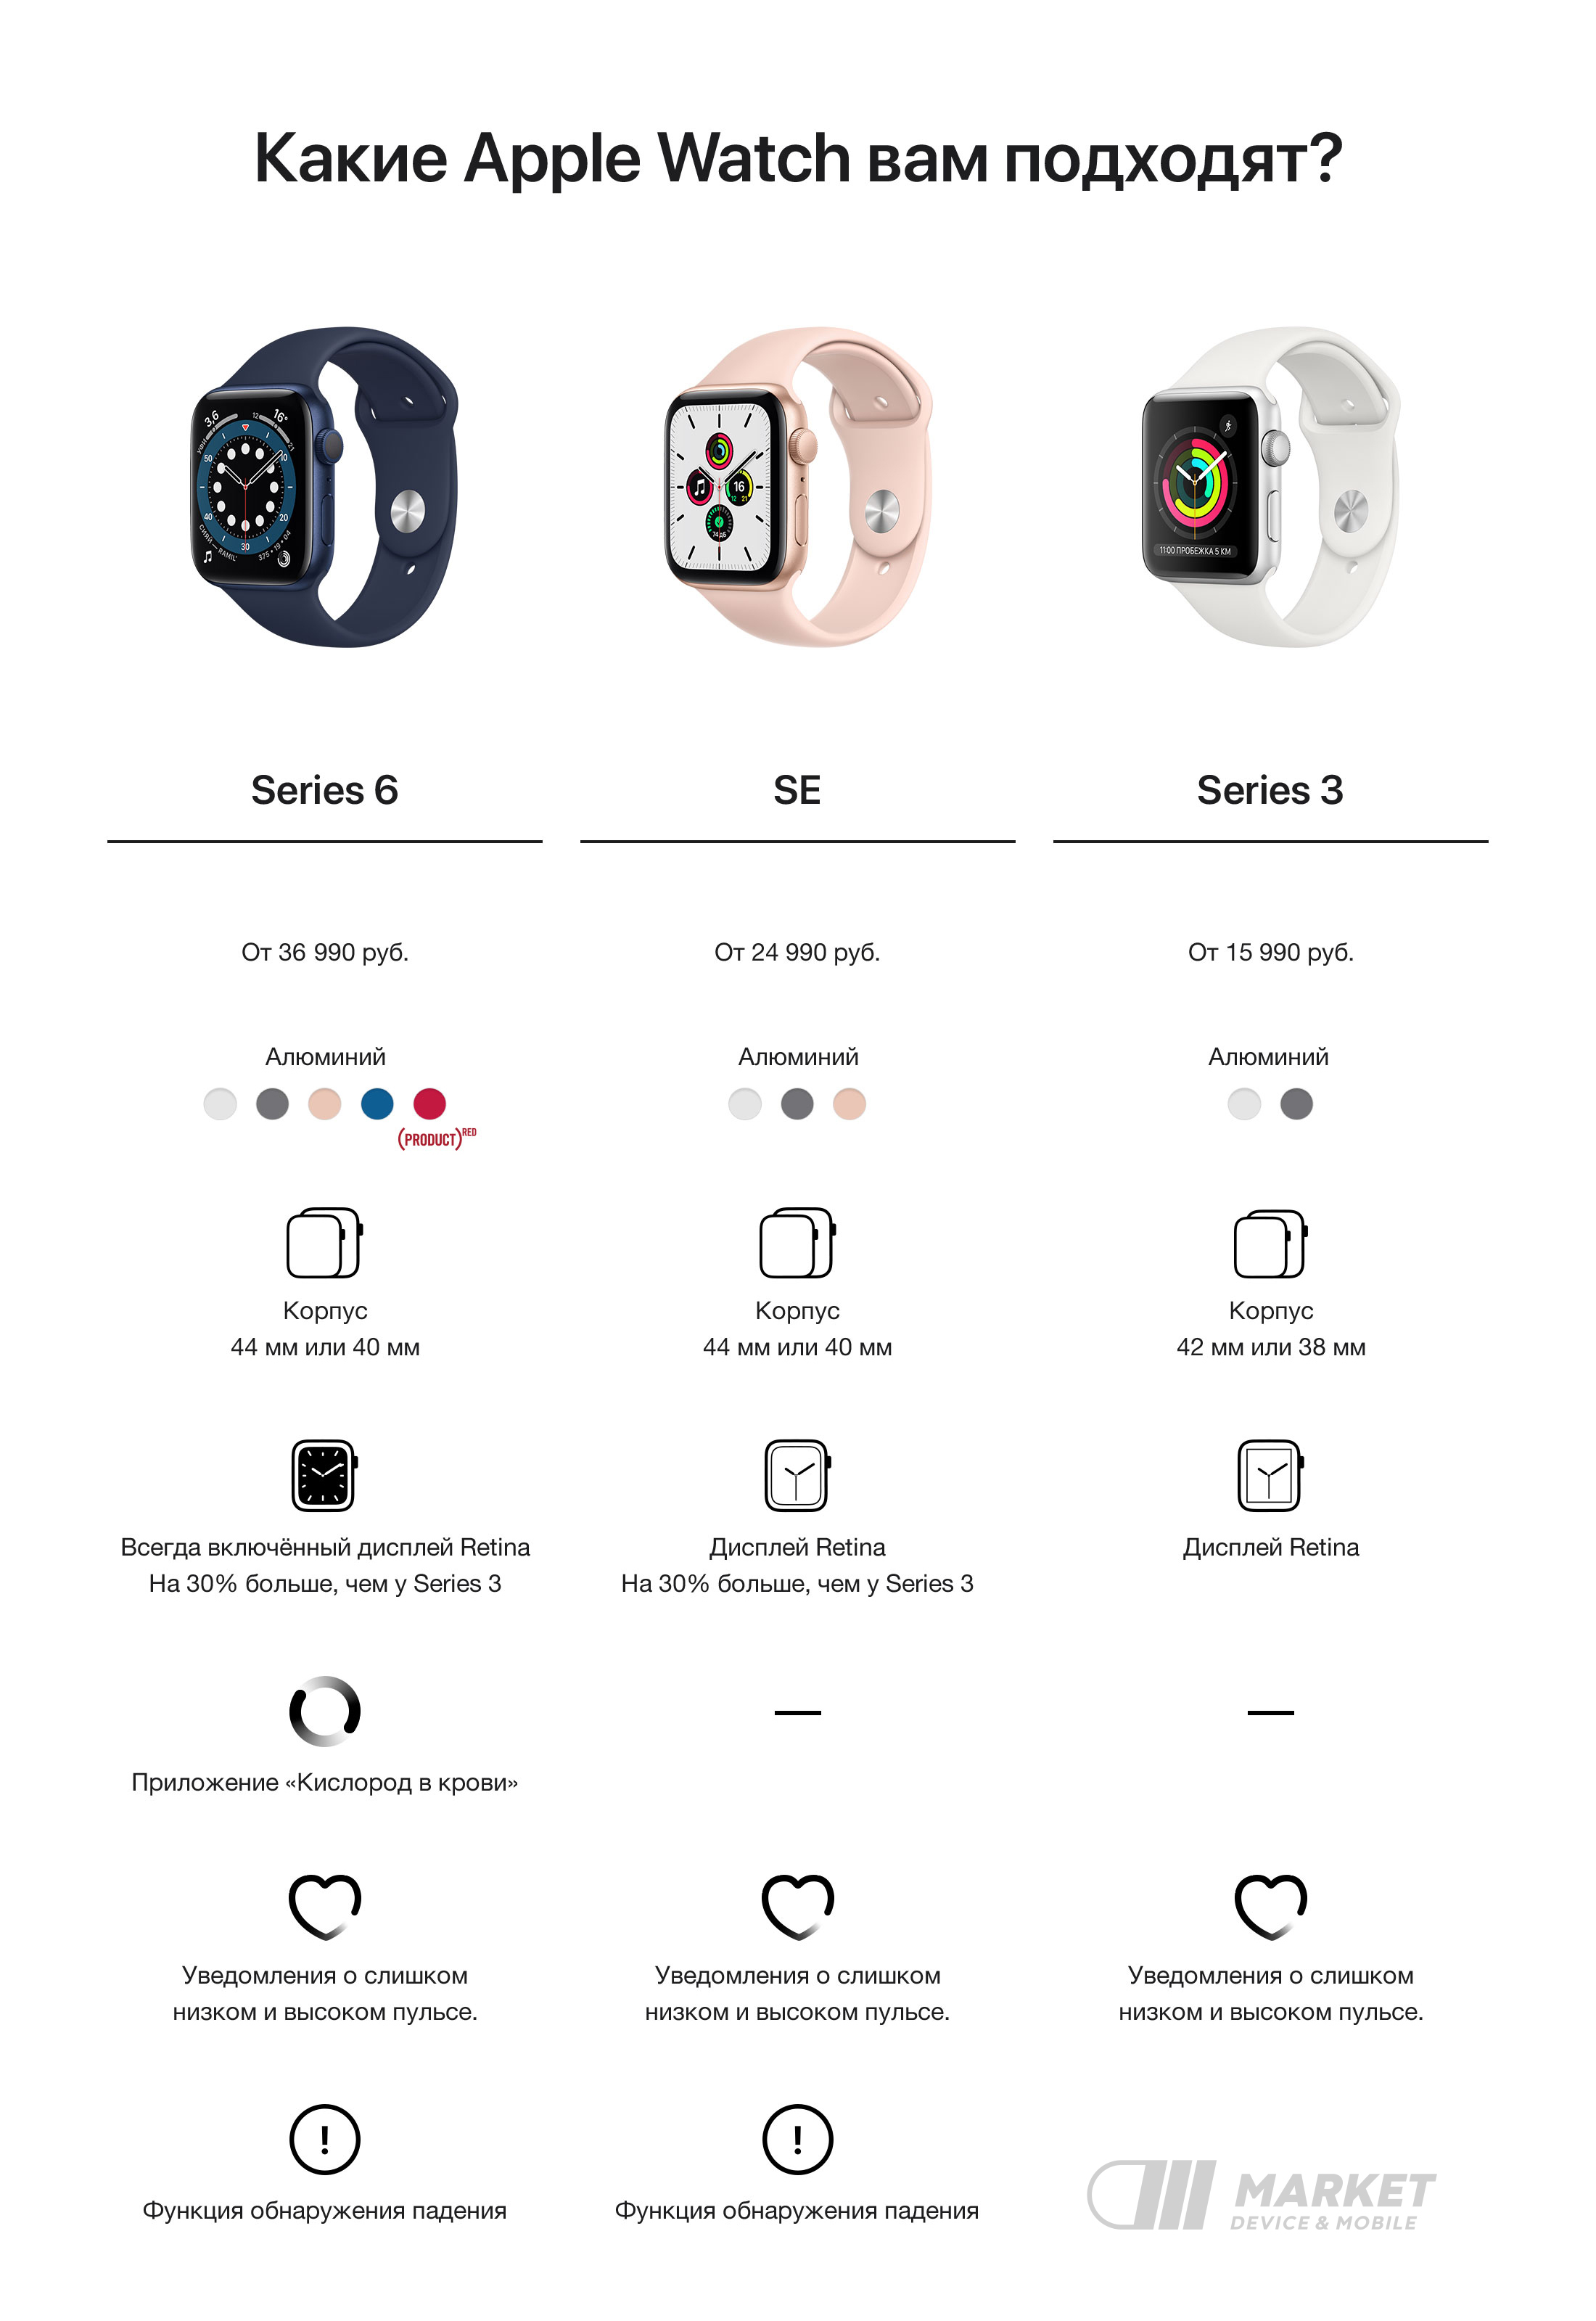 Доступные версии whatsapp для apple watch